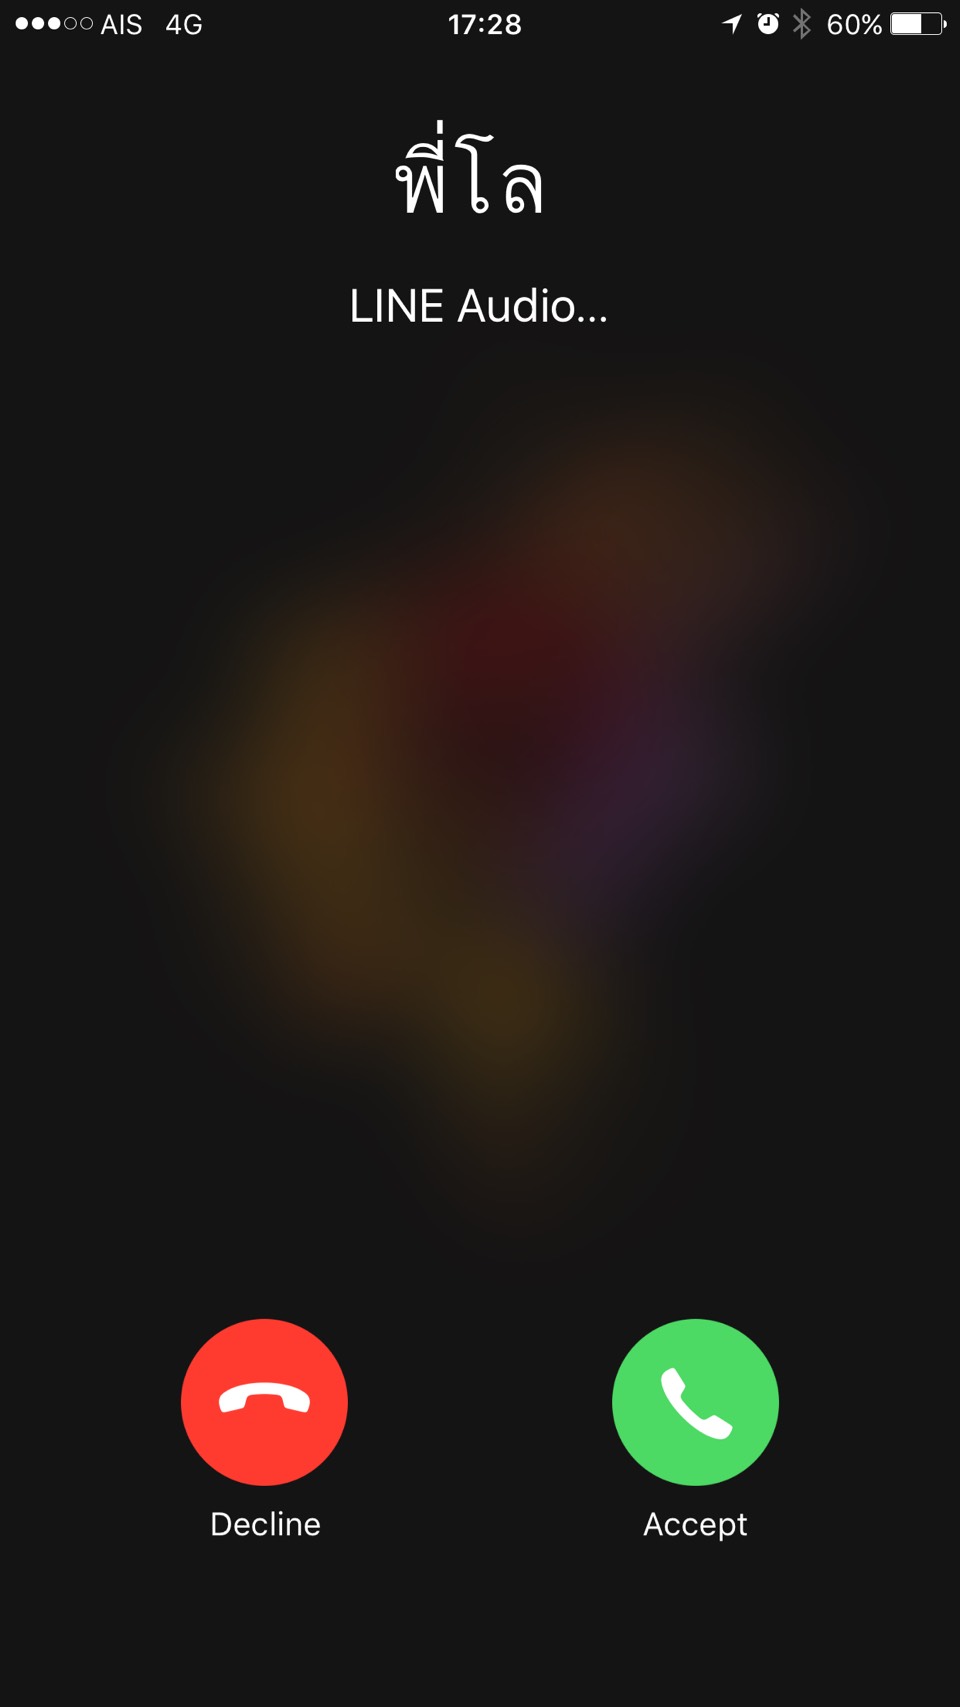 15007807 924615921001868 396224559 o | IOS (iPhone/iPad) | Line รองรับ PhoneKit บน iOS10 แล้ว การโทรเข้า-โทรออกจากนี้จะใช้การแจ้งเตือนเหมือนสายทั่วไปโทรเข้าทั่วไป!